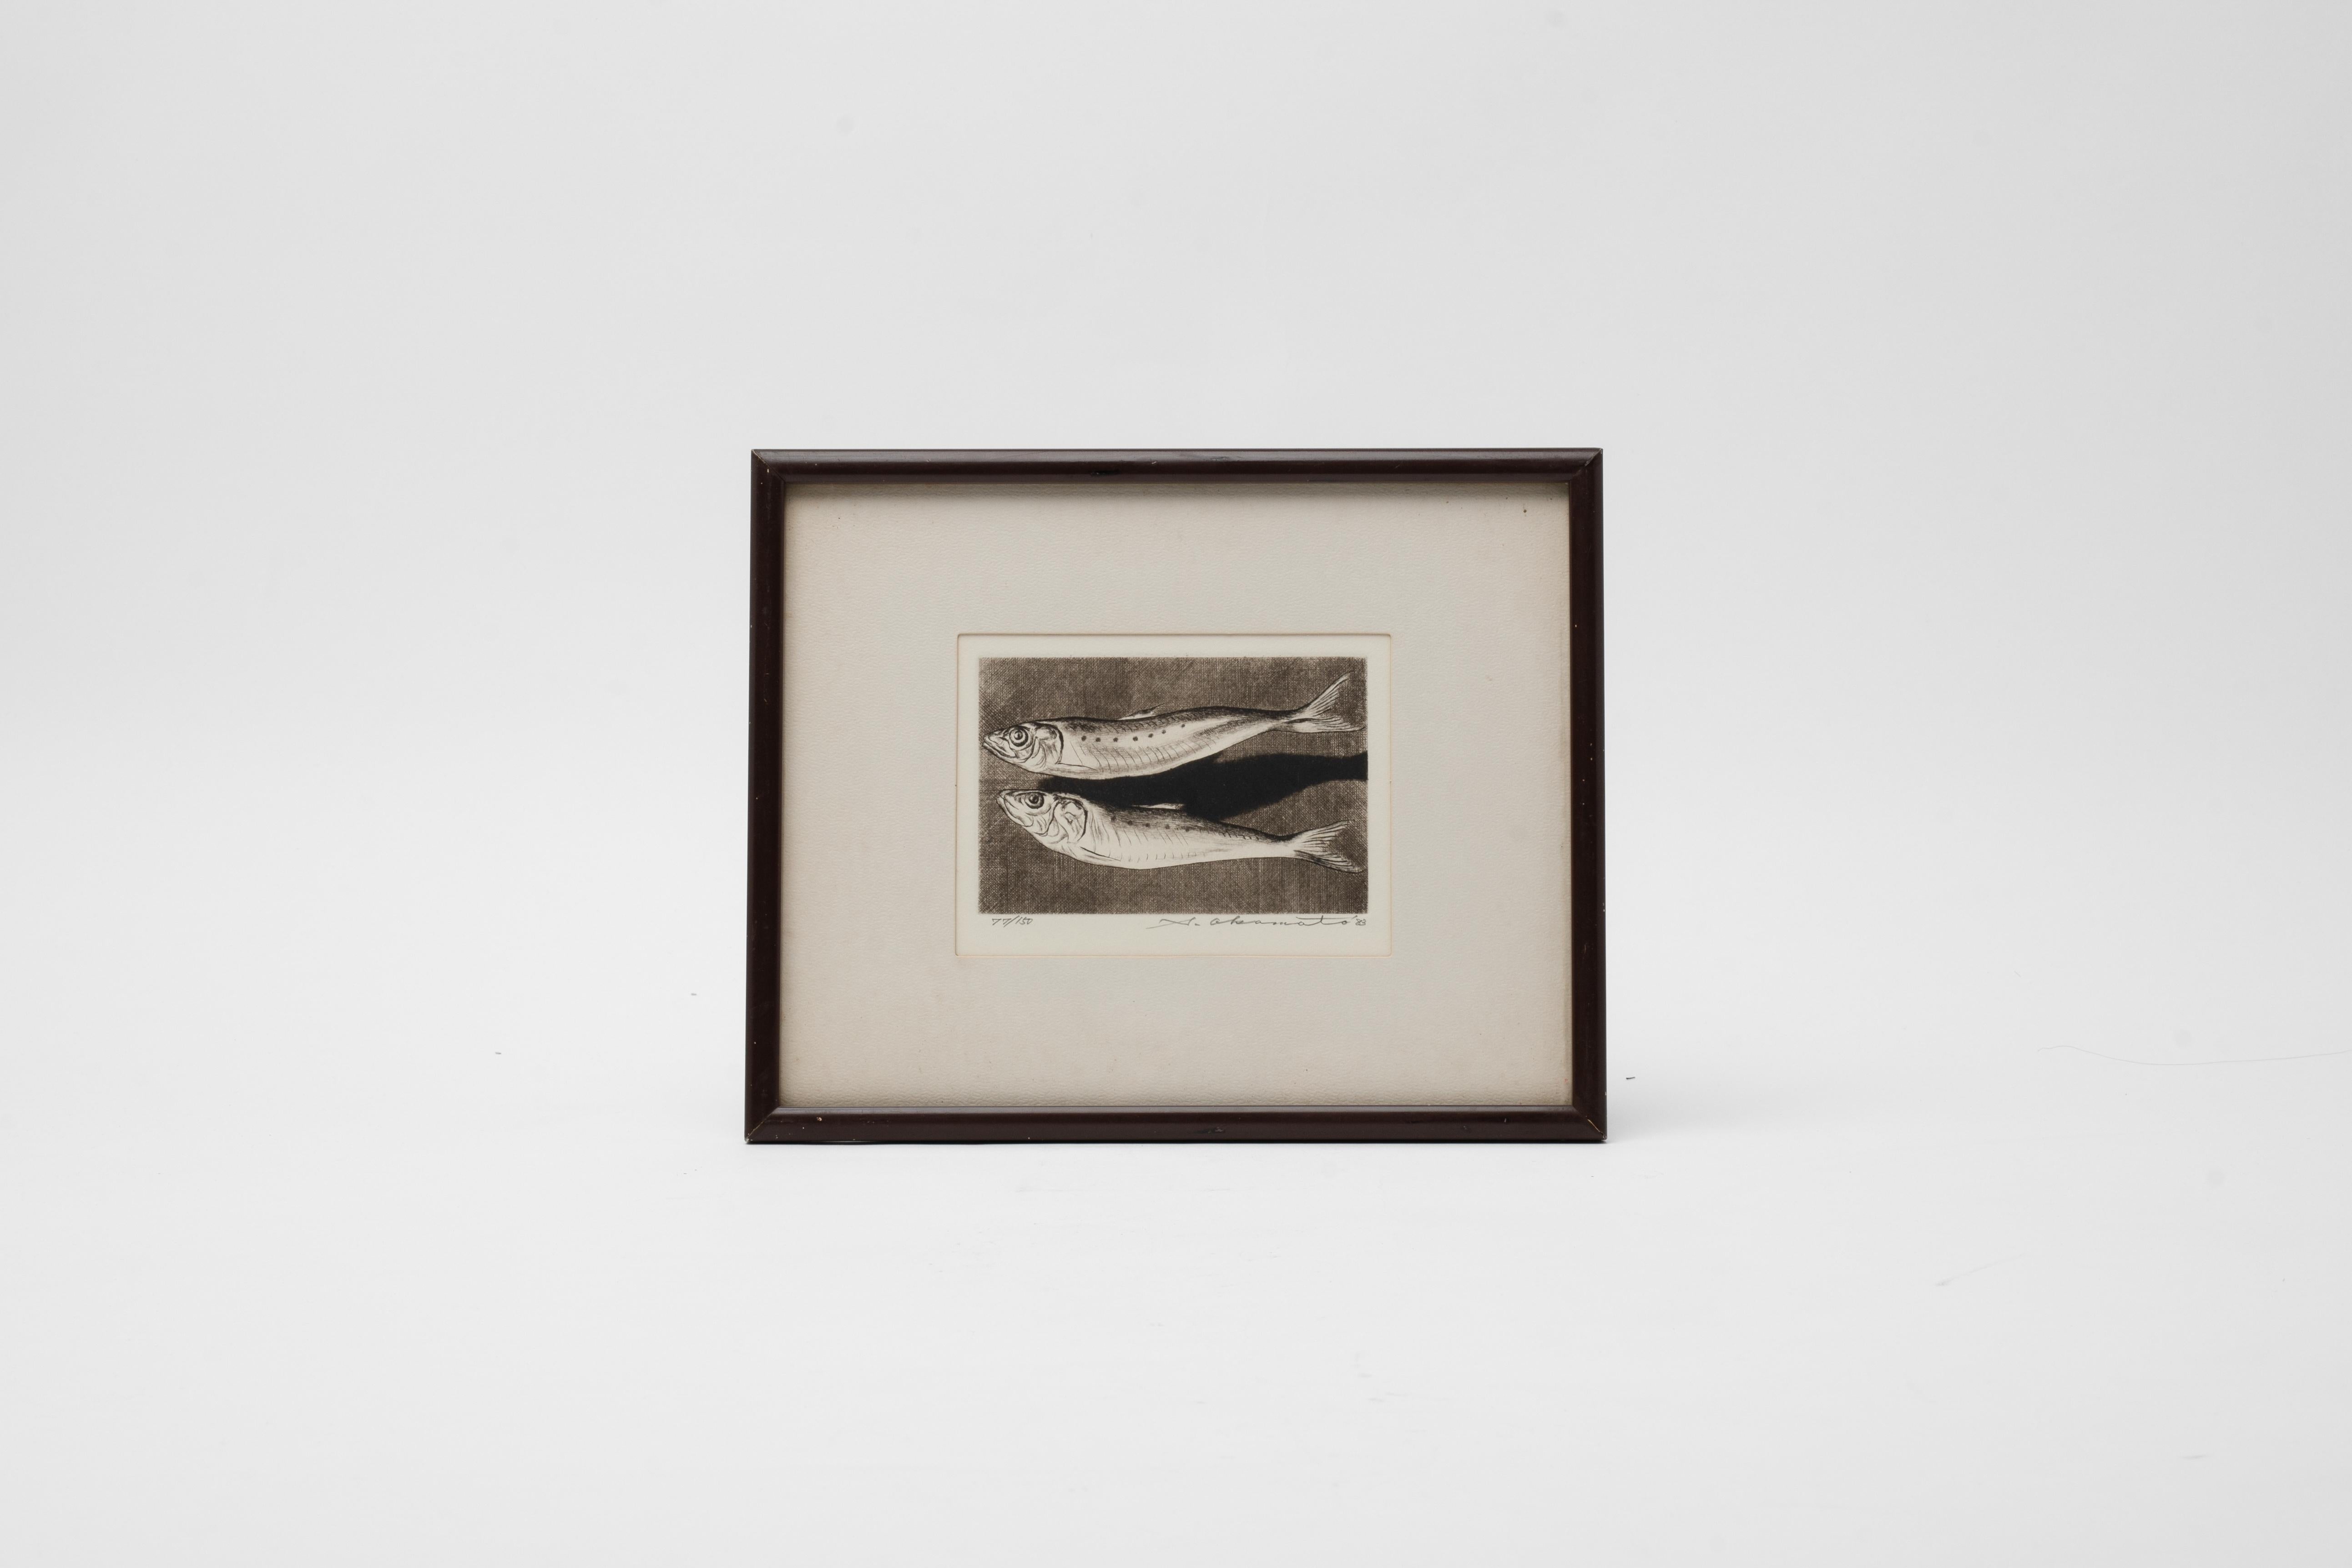 Unglaublich handgefertigte Kupferstich Radierung Druck eines Paares von Fischen. Ich kann den Namen des Künstlers nicht erkennen, aber es ist signiert und hat eine Auflage von 77/150 - datiert 1983

Der Grafiker Shogo Okamoto wurde 1920 in Tokio,